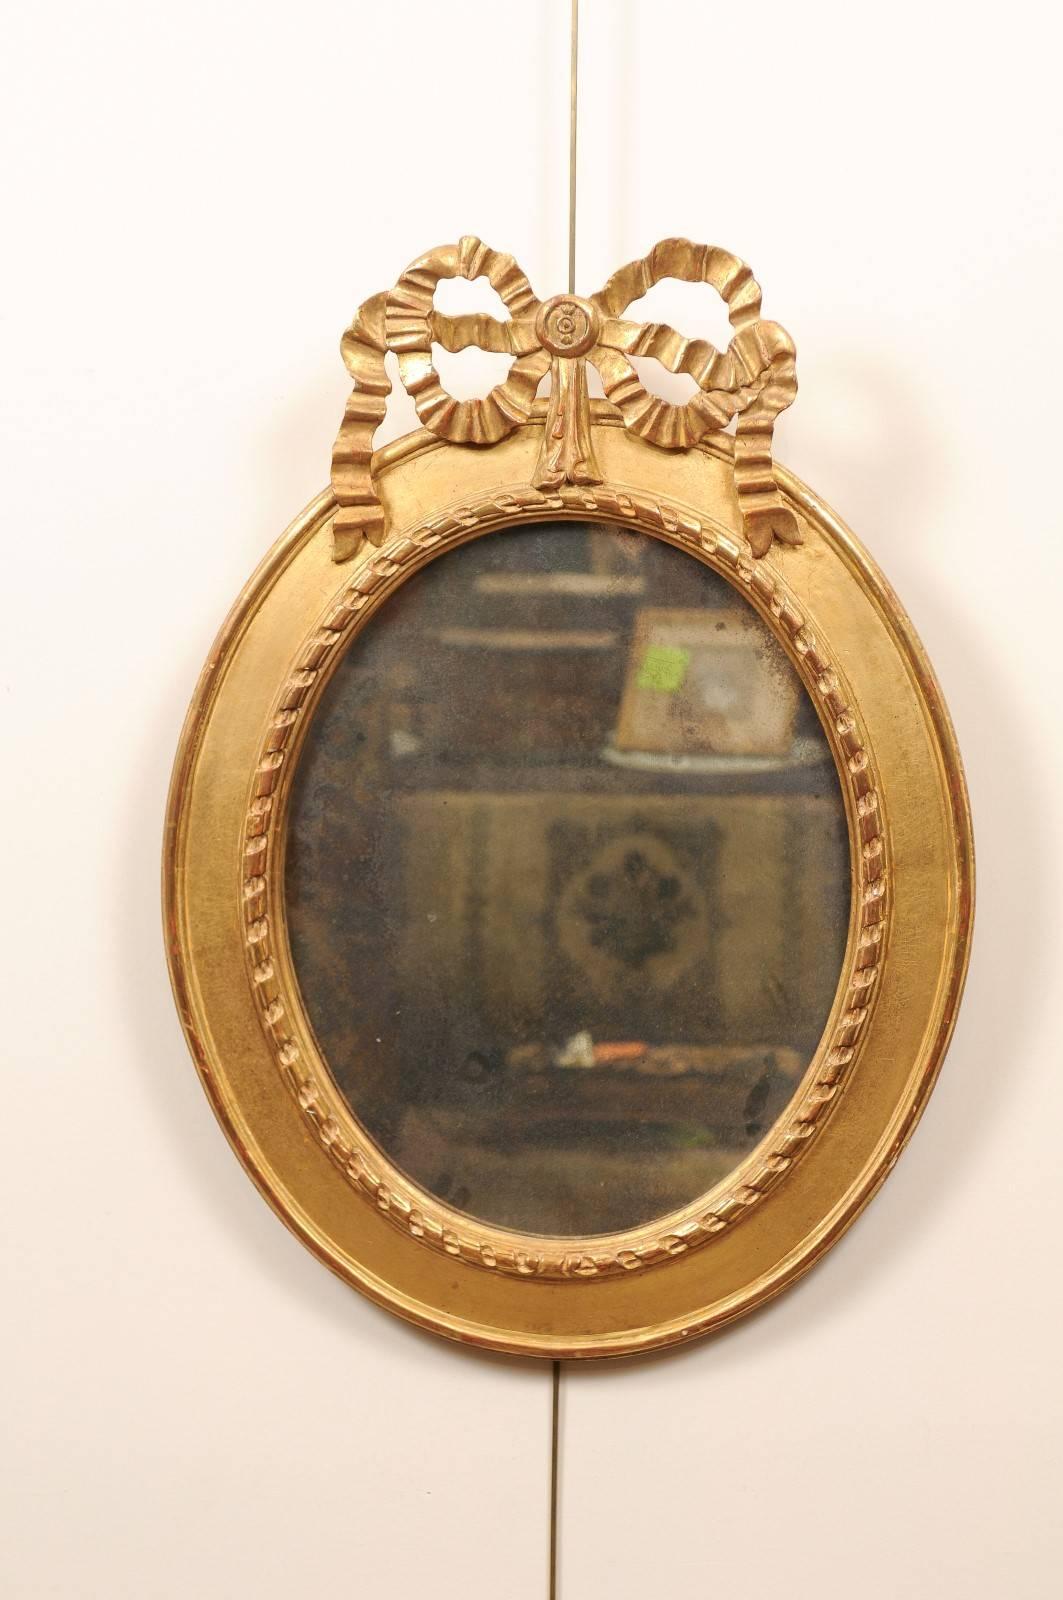 Paar ovale Spiegel aus vergoldetem Holz mit Bogenaufsatz, 20. Jahrhundert. Beide Spiegelplatten mit Alterungsbehandlung.